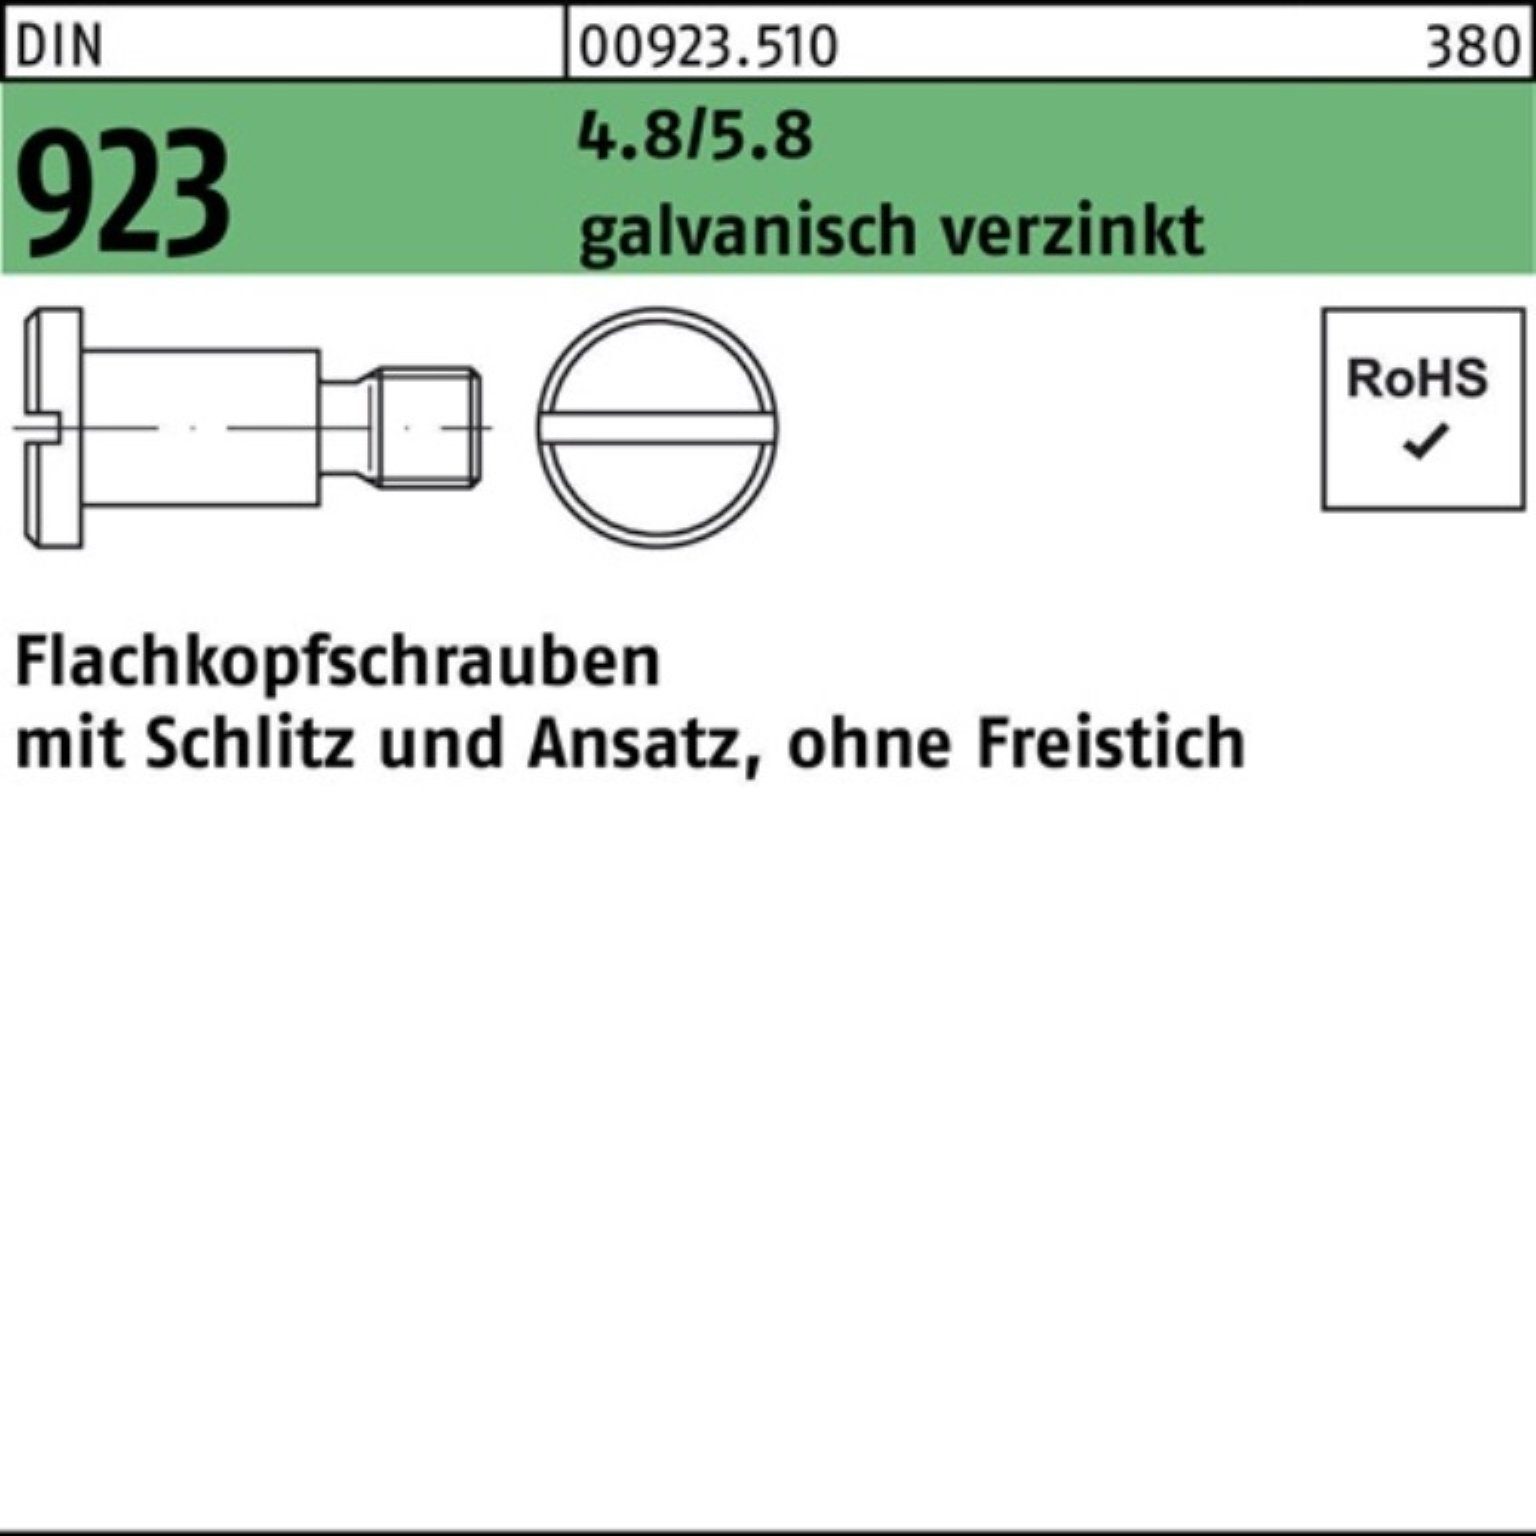 M4x6x6,0 DIN Flachkopfschraube g 4.8/5.8 923 Reyher Schraube Pack Schlitz/Ansatz 100er